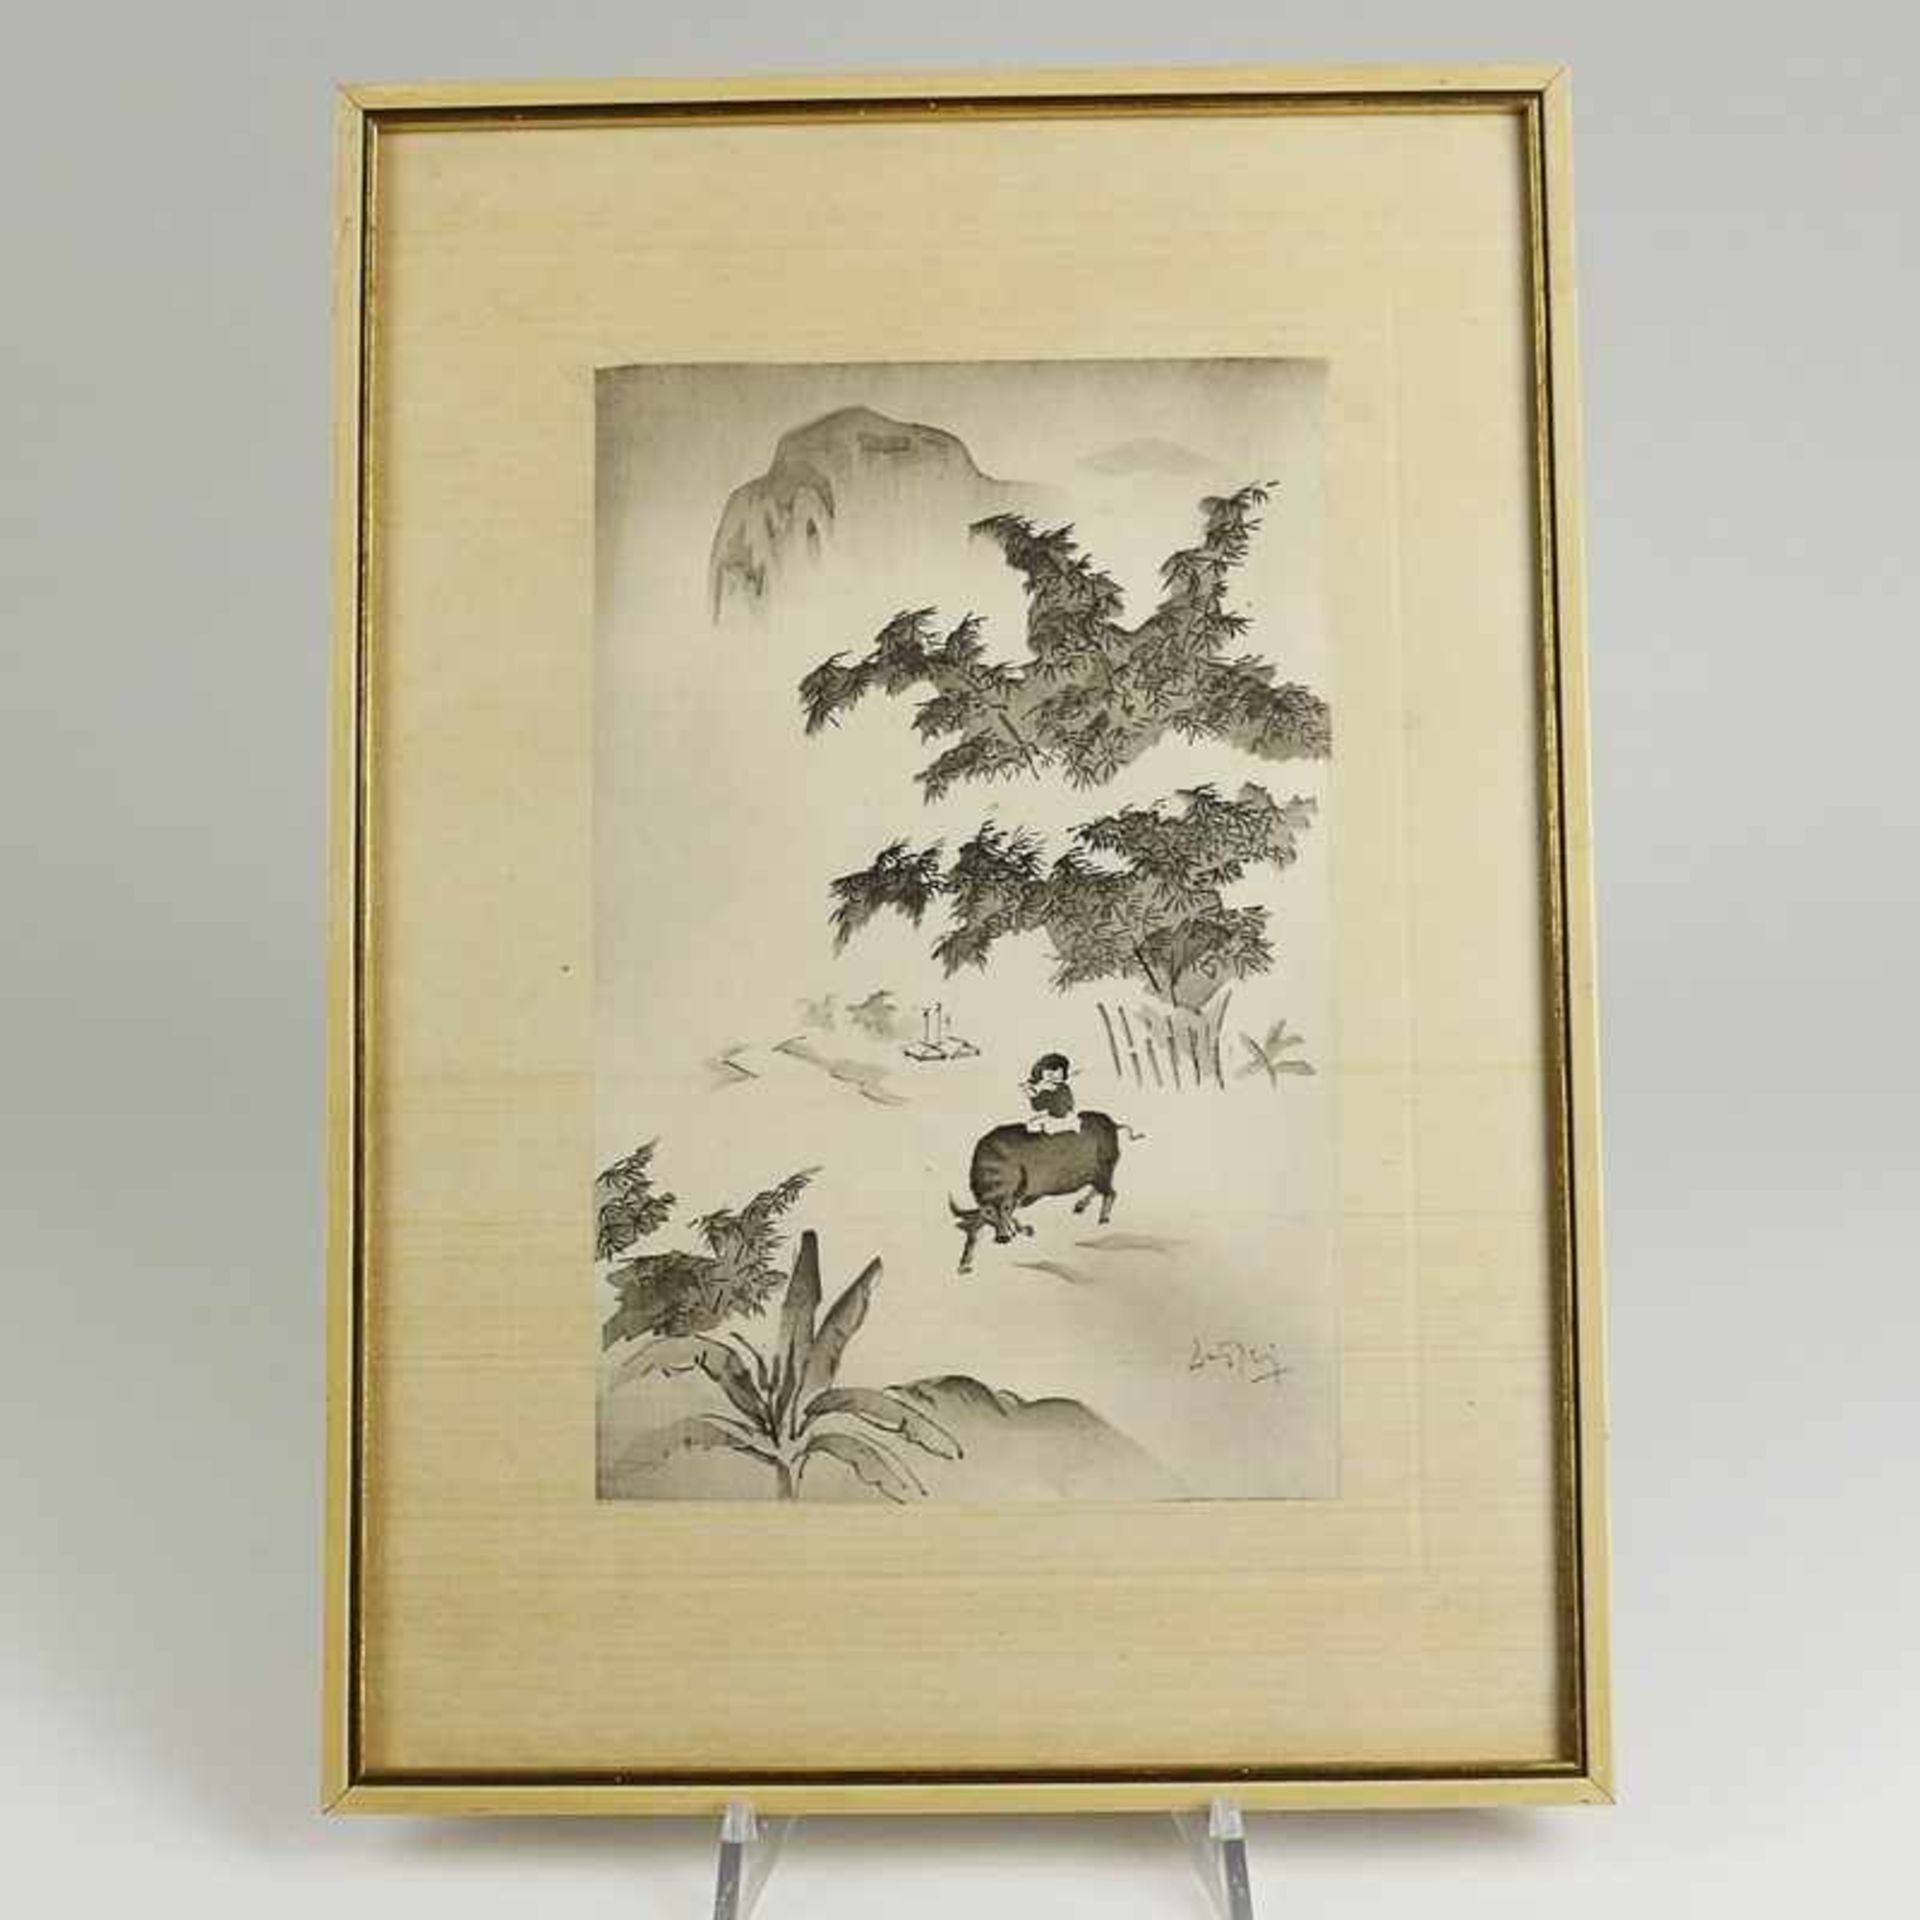 Seidenmalerei - China 20.Jh., schwarze Malerei, Flötenspieler auf einem Bullen vor einer